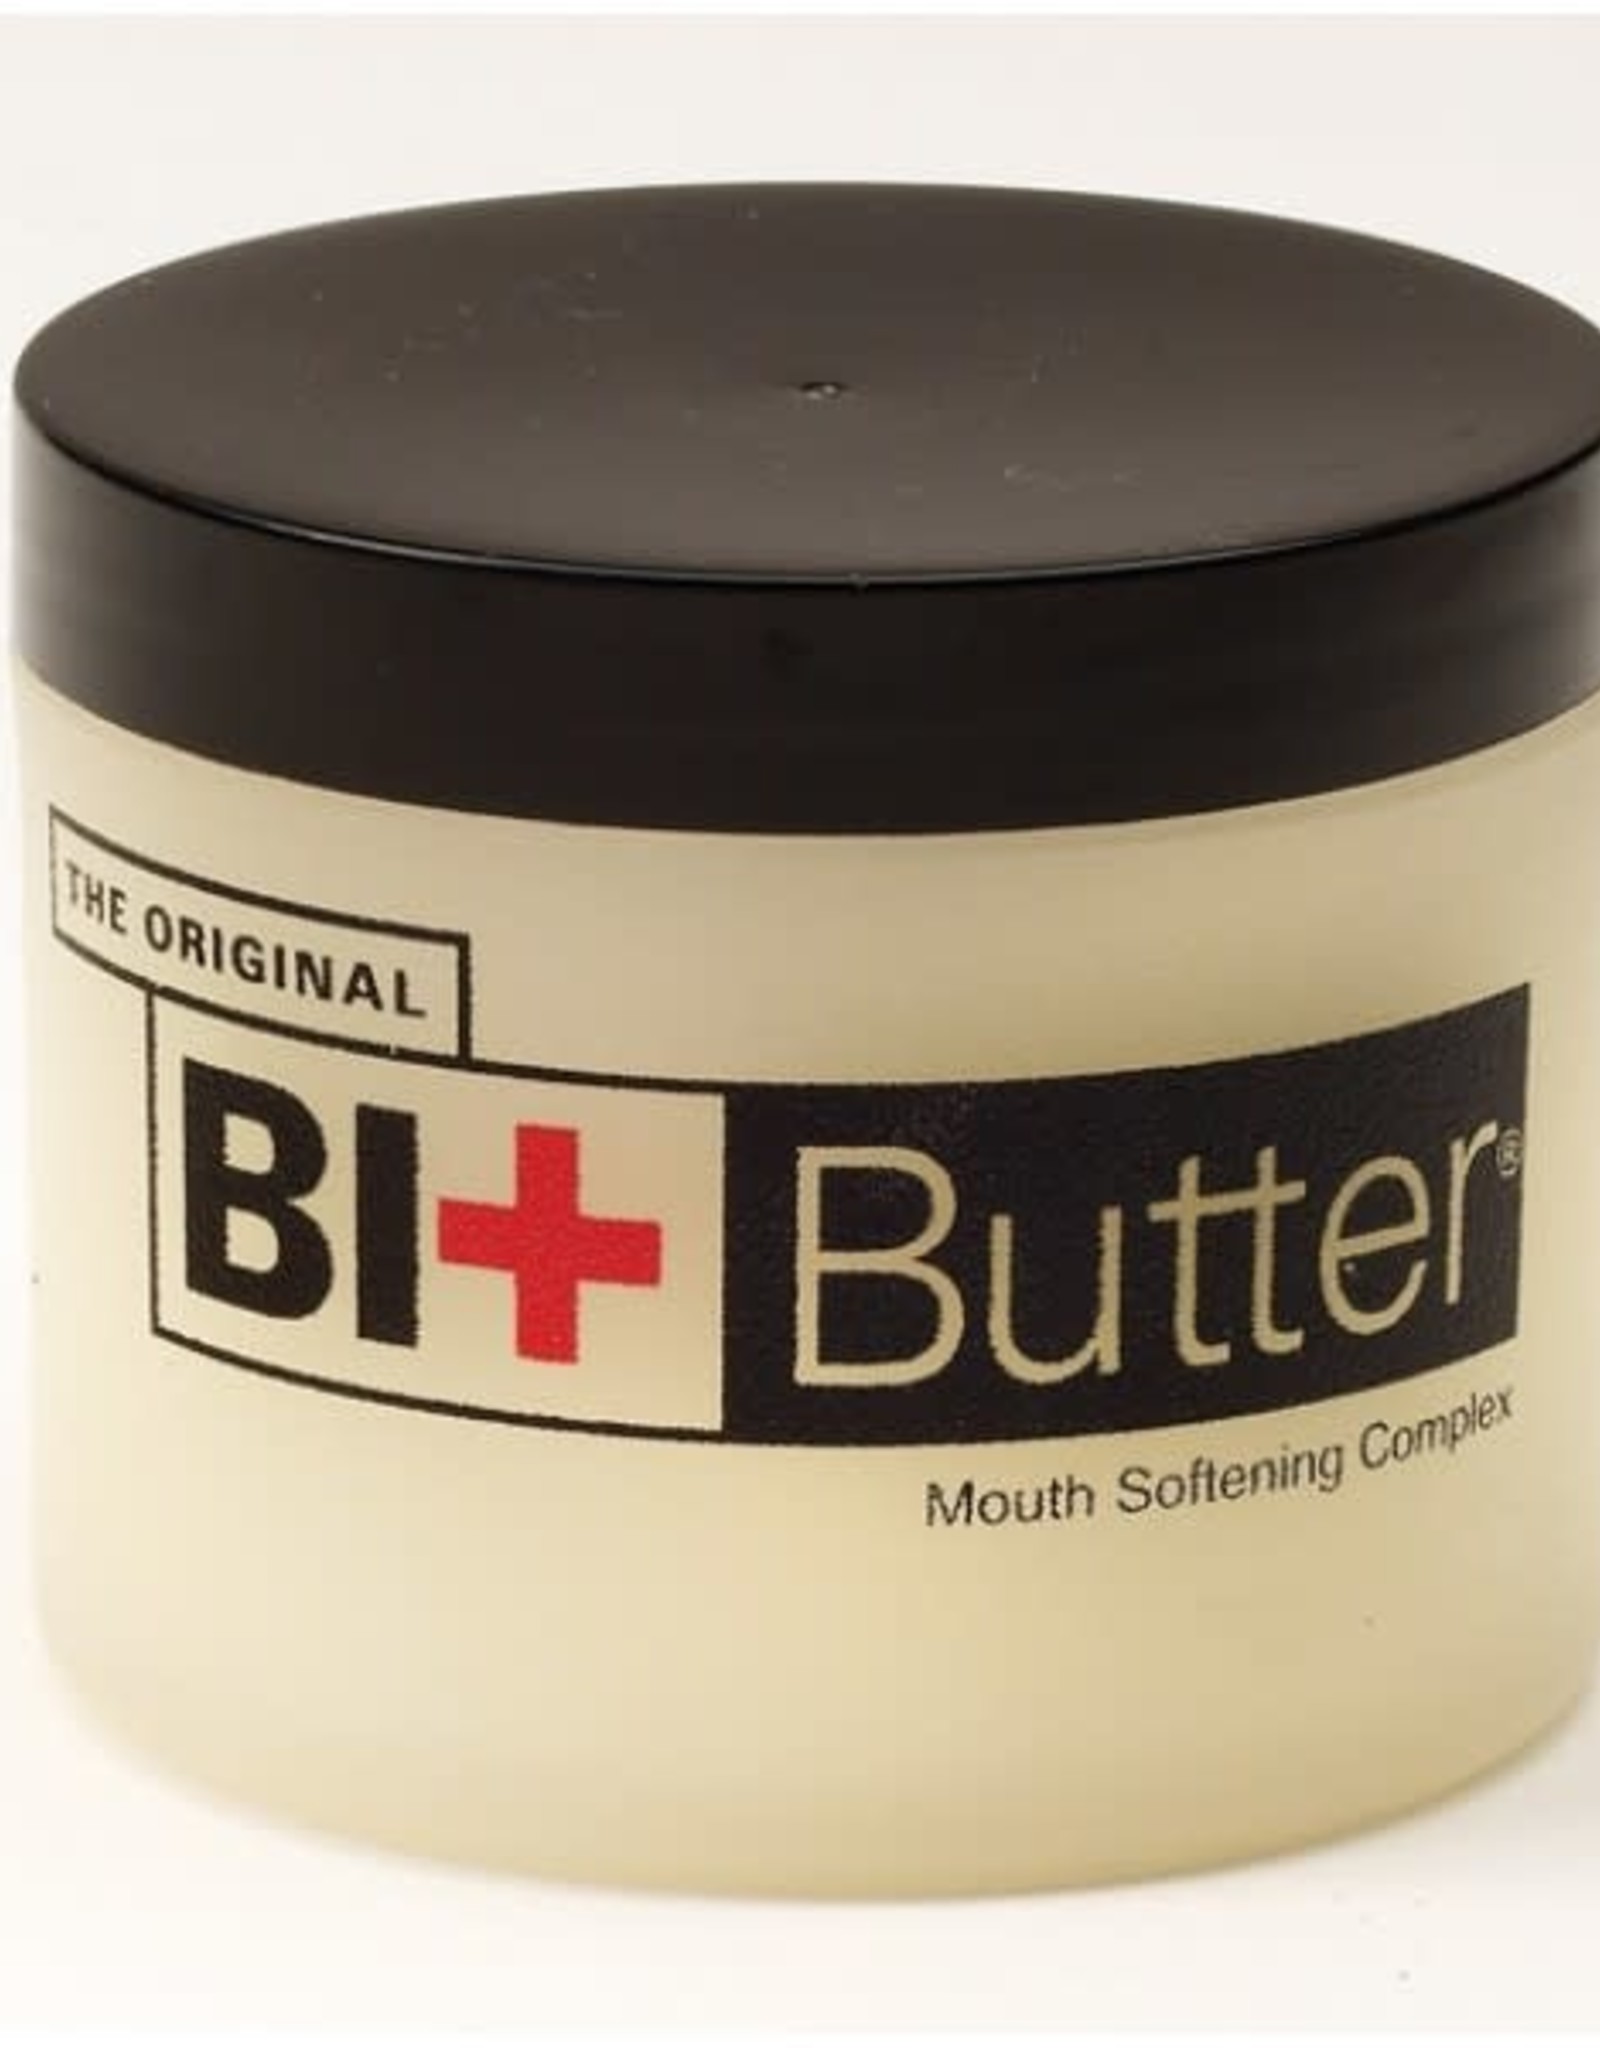 Original Bit Butter 2oz